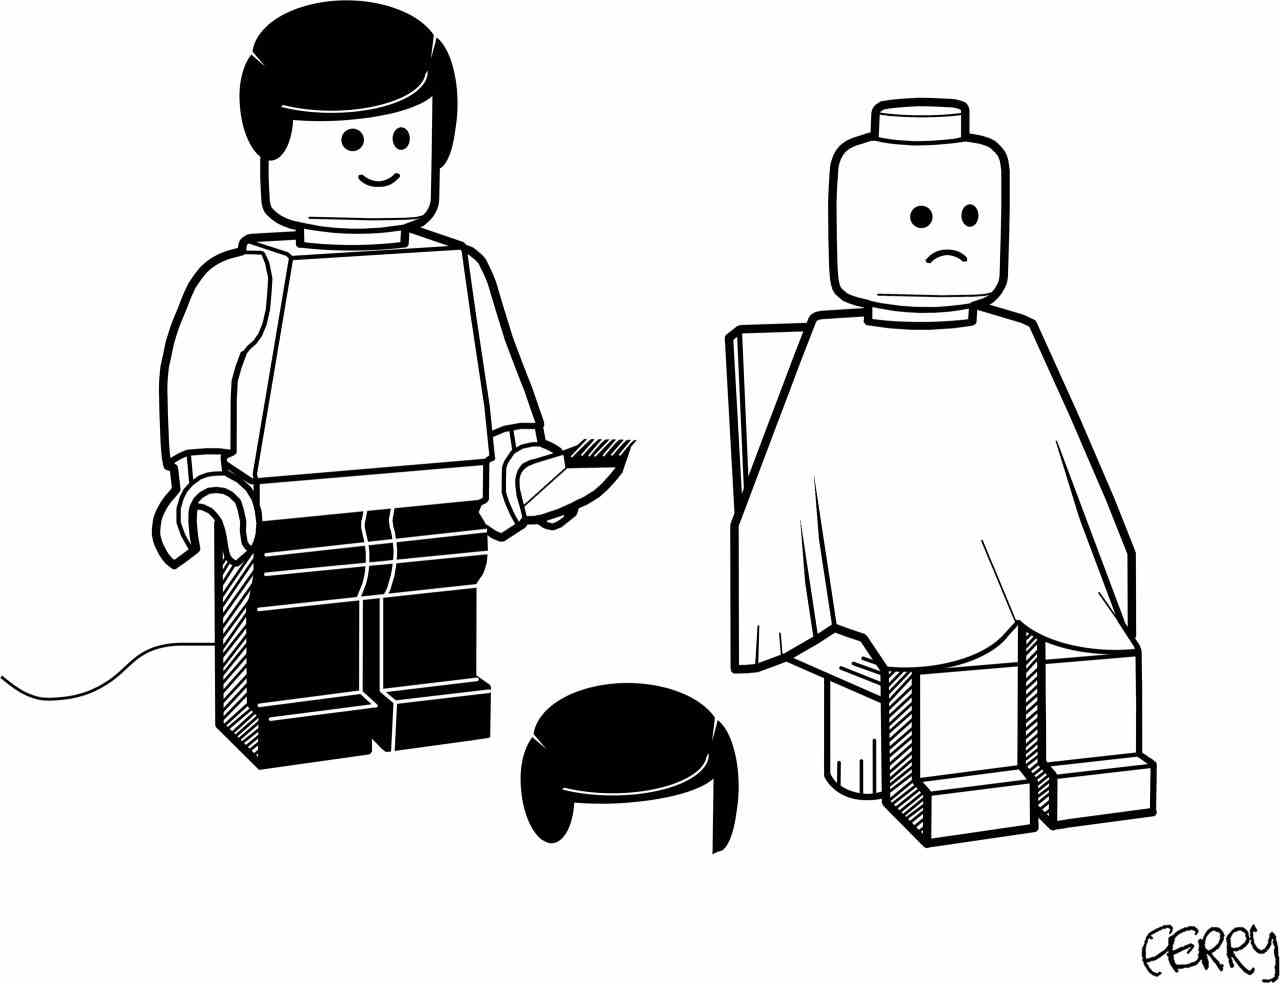 Lego-Person verärgert, weil Friseur ihr Lego-Haarteil abrasiert hat.